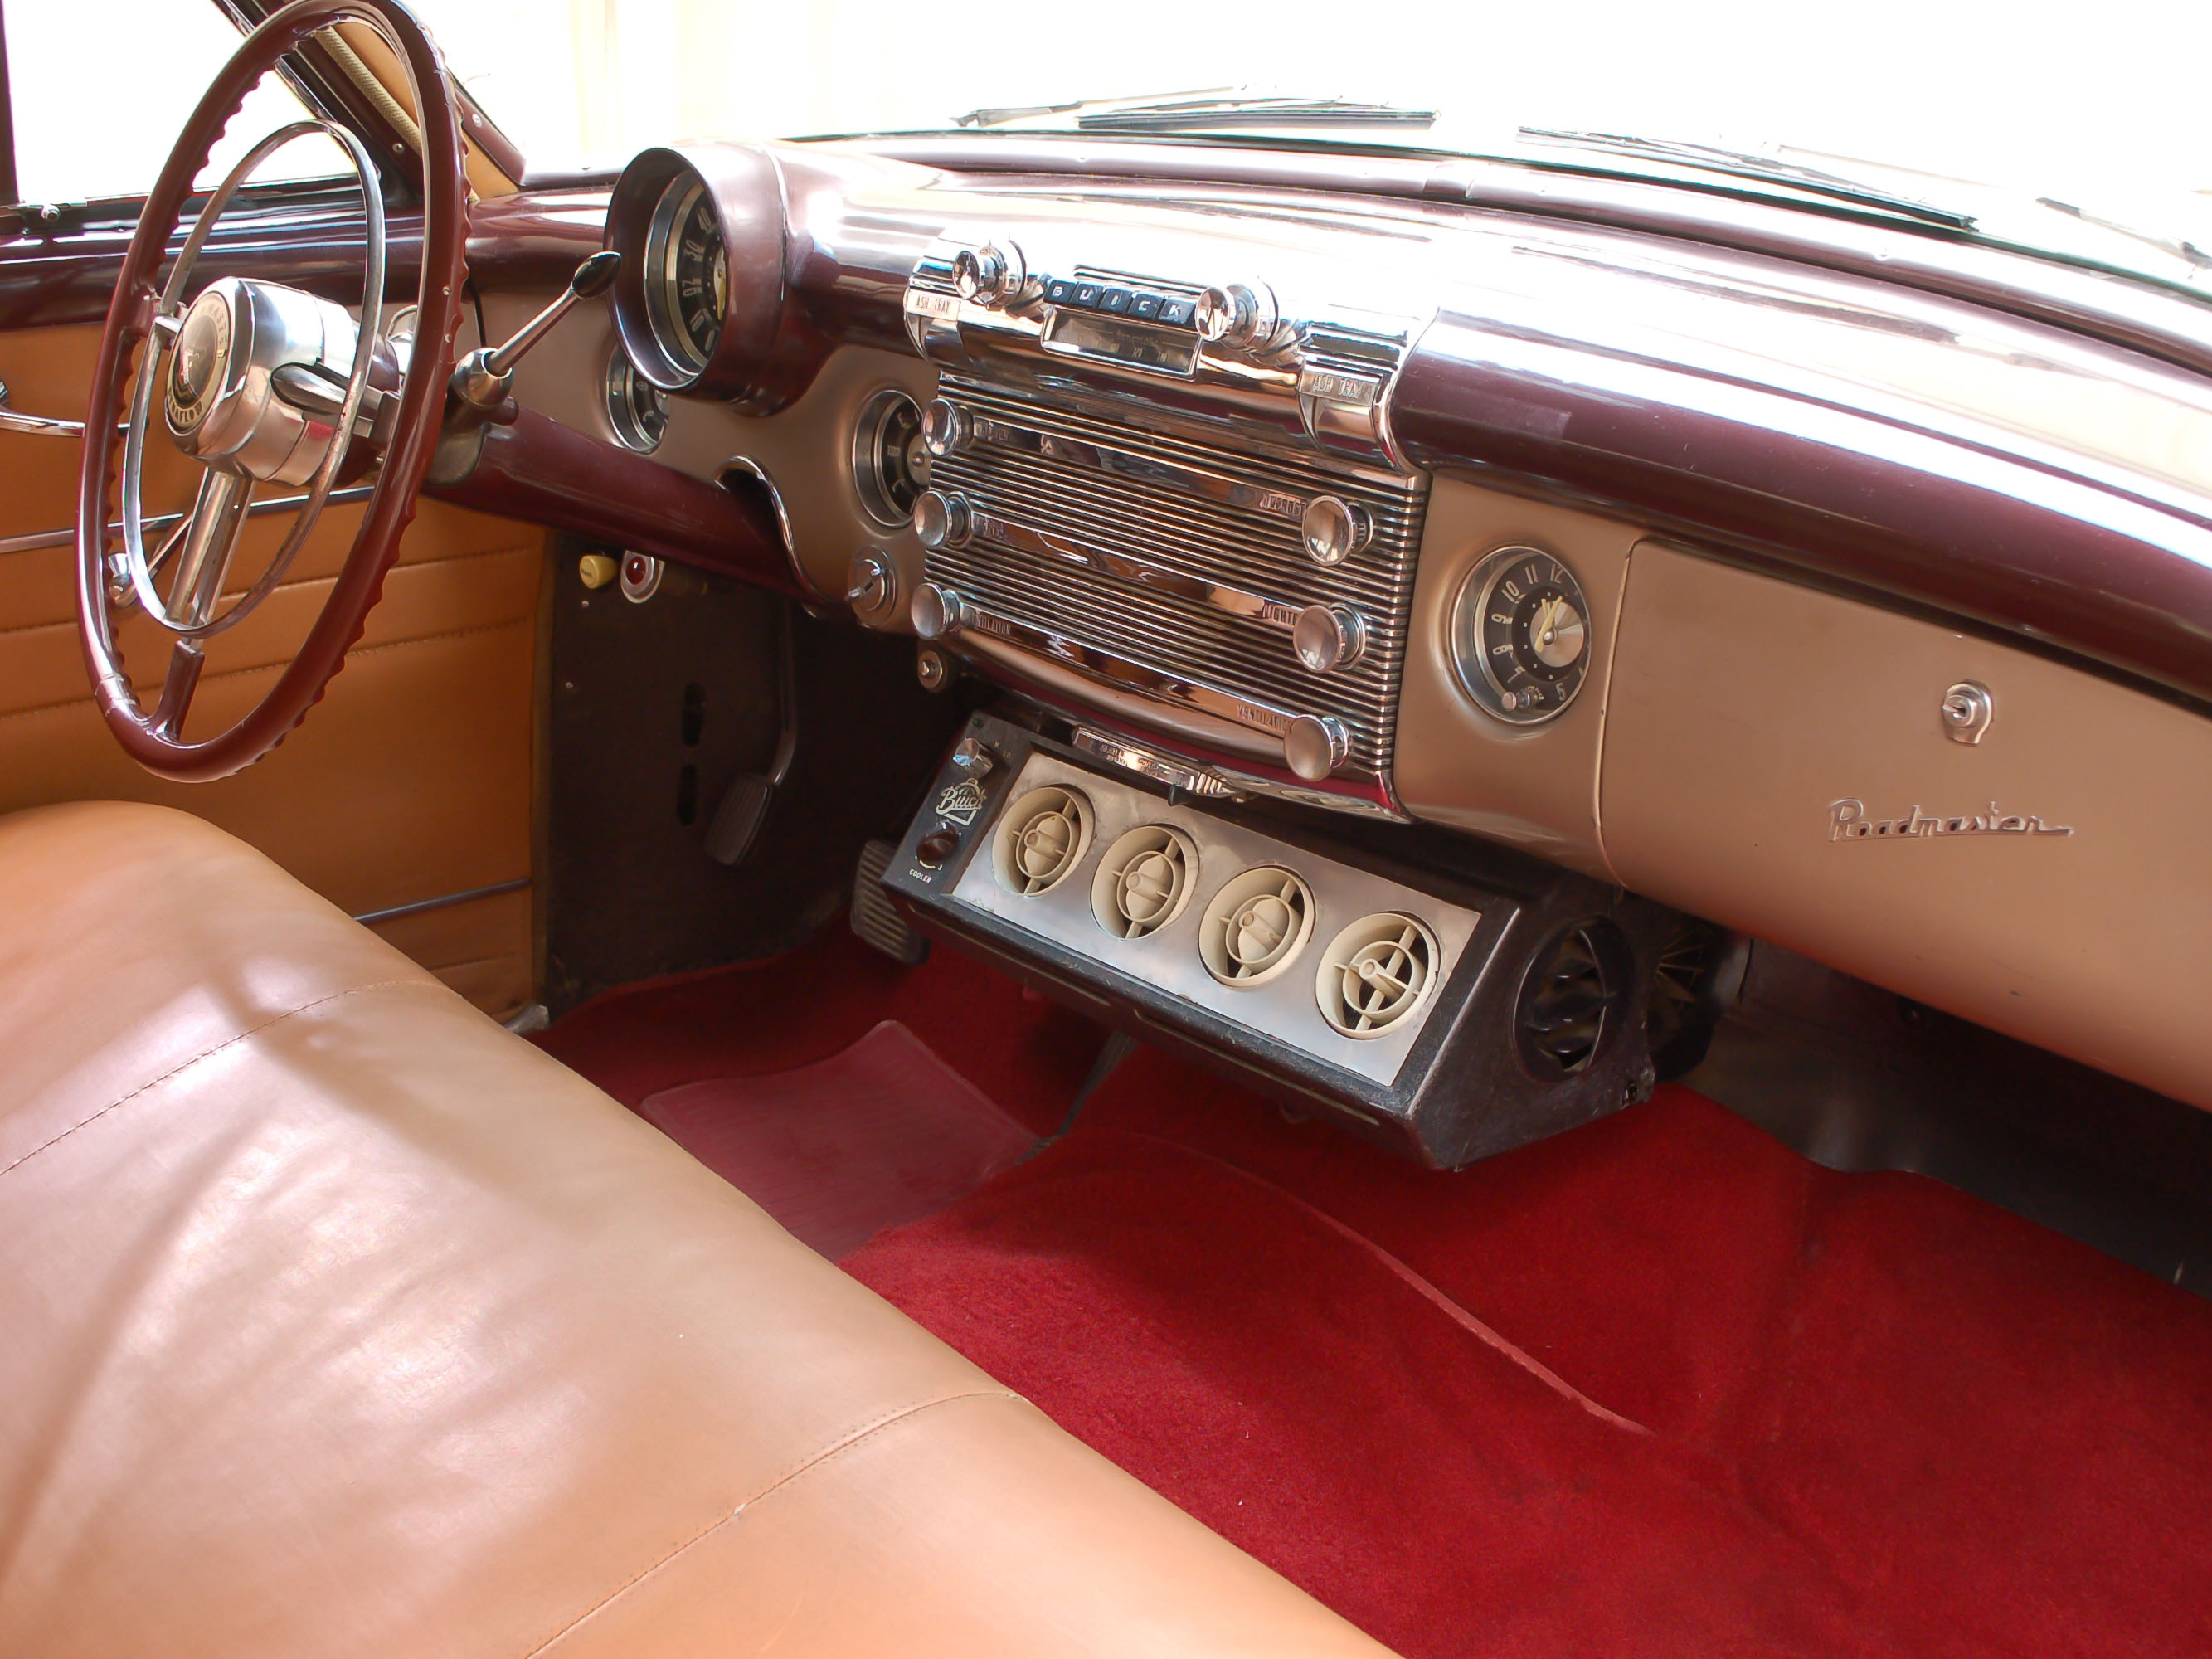 1950 buick roadmaster deluxe model 76r